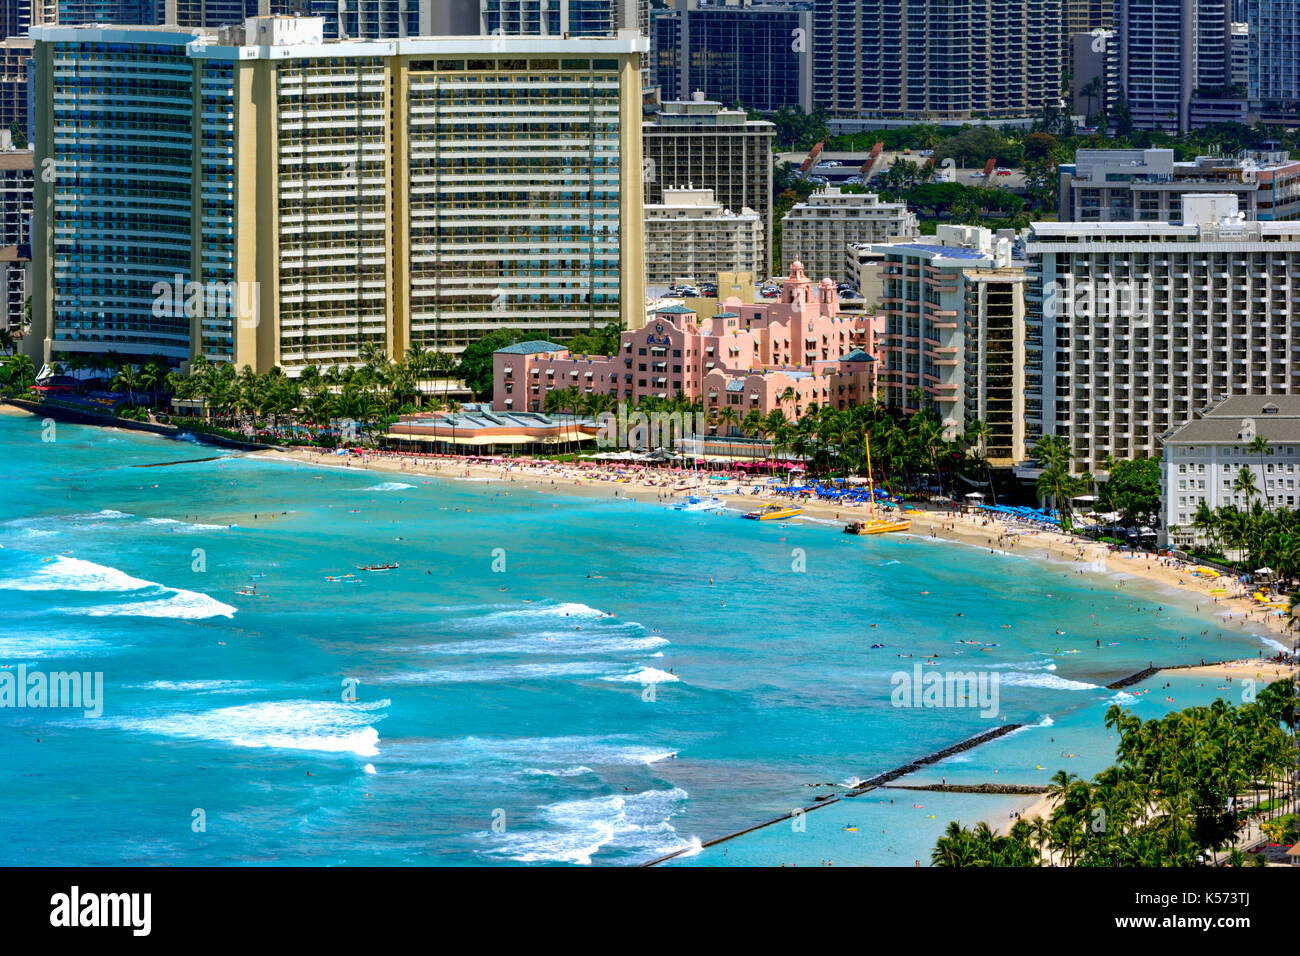 La plage de Waikiki avec littoral et hôtels dans l'arrière-plan. Bâtiment rose, hotels, catamaran à voile, les surfers et les baigneurs Banque D'Images